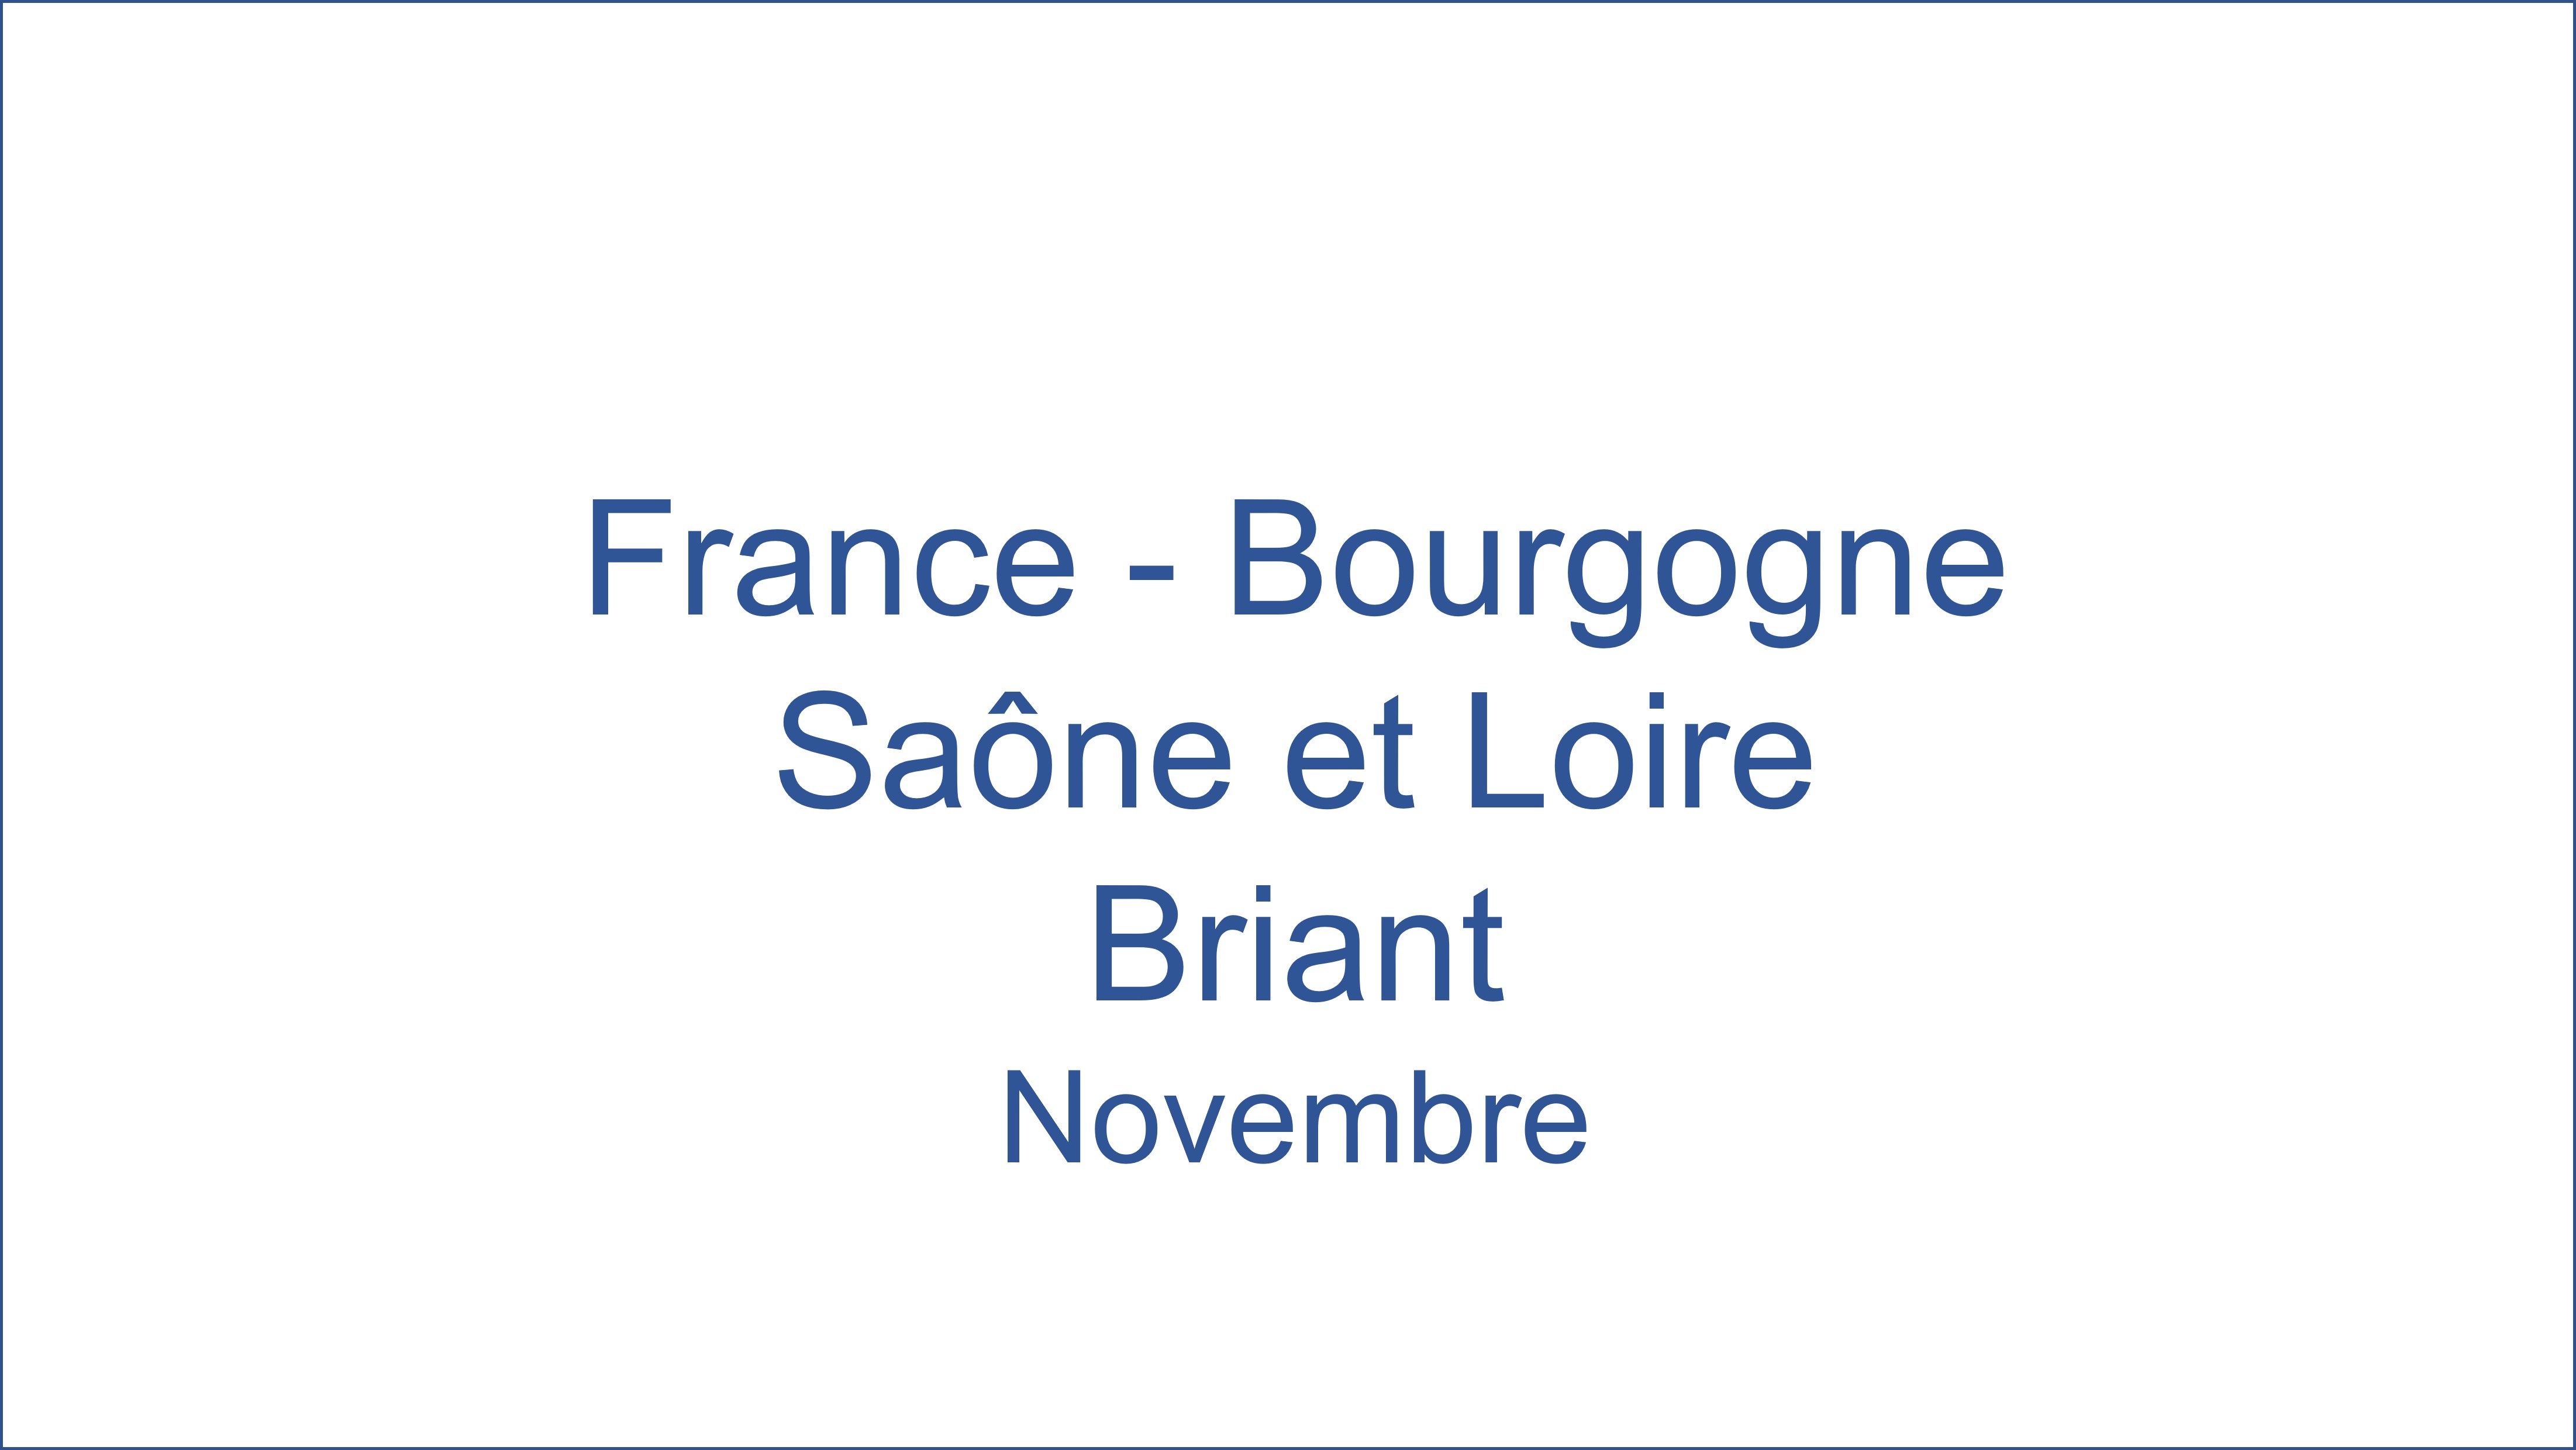 France - Bourgogne Sane et Loire Briant 11/2021